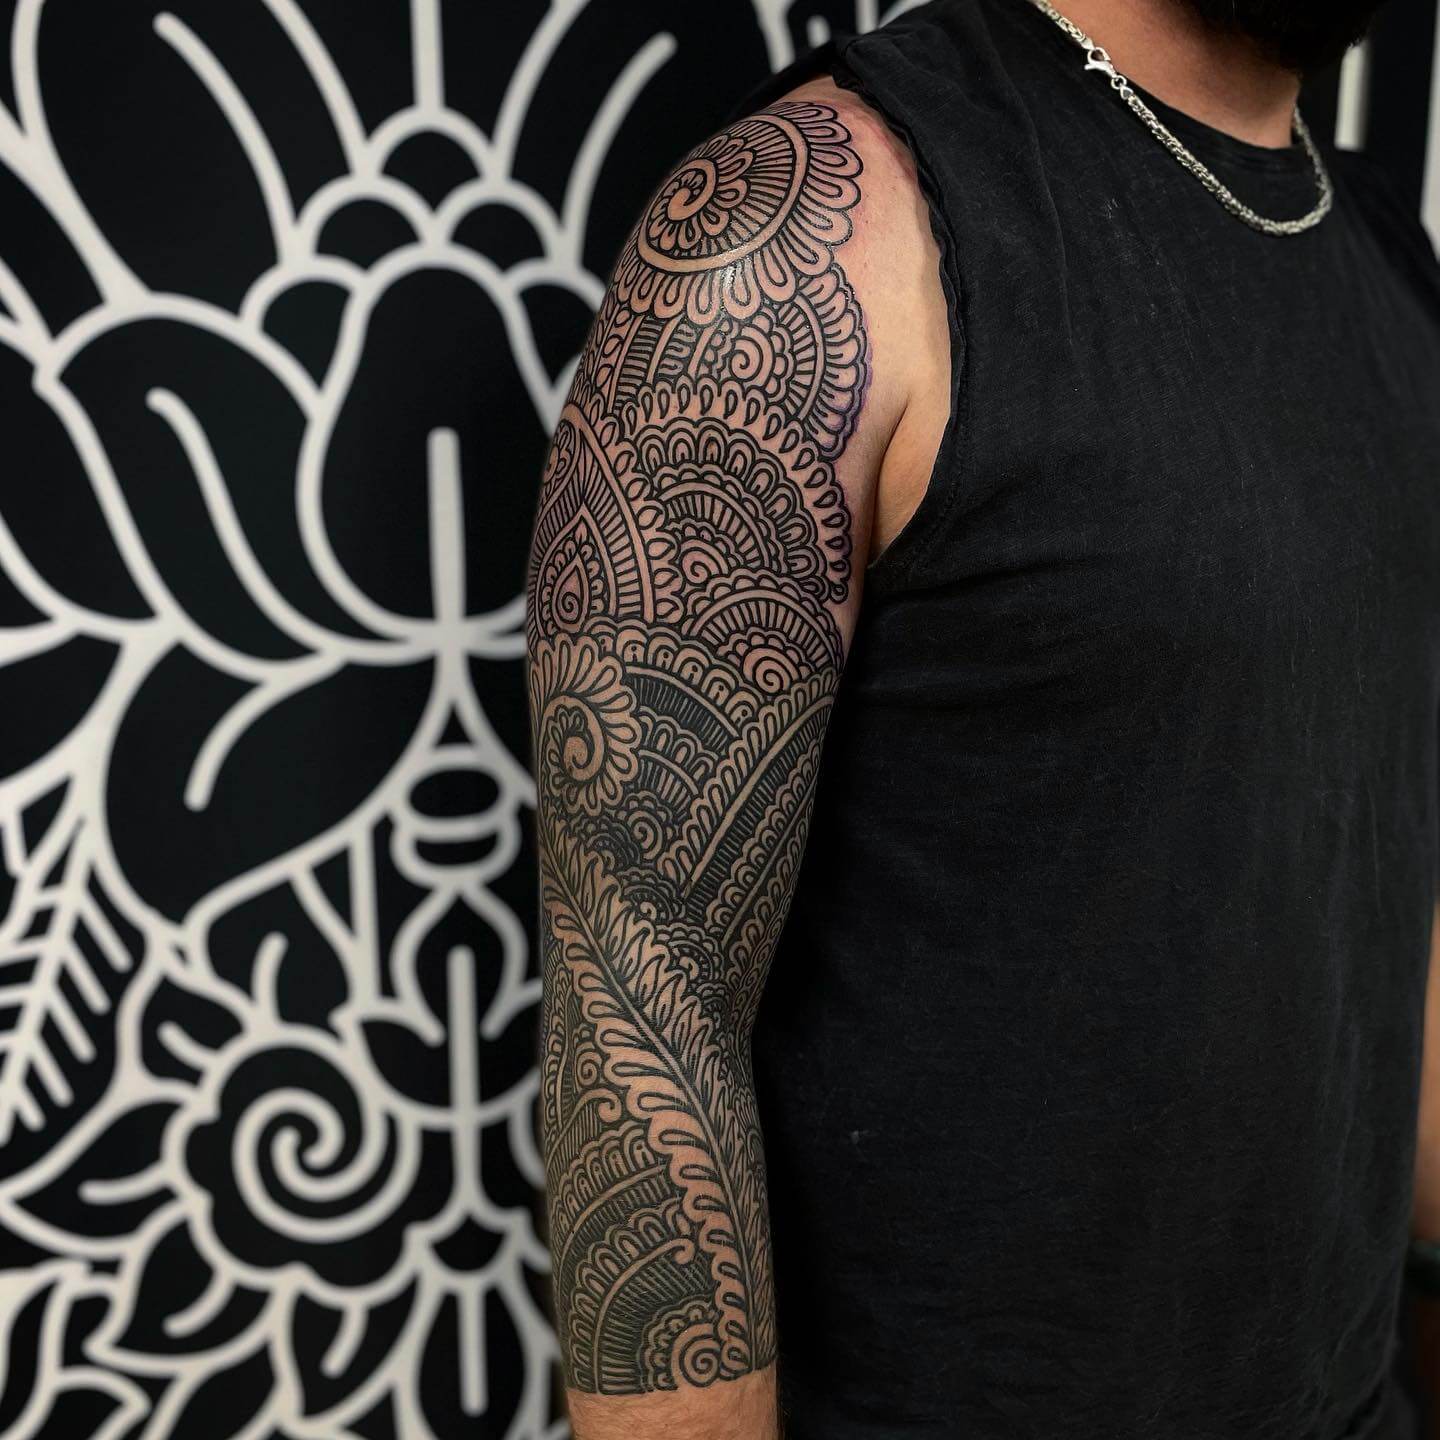 ornamental sleeve tattoos